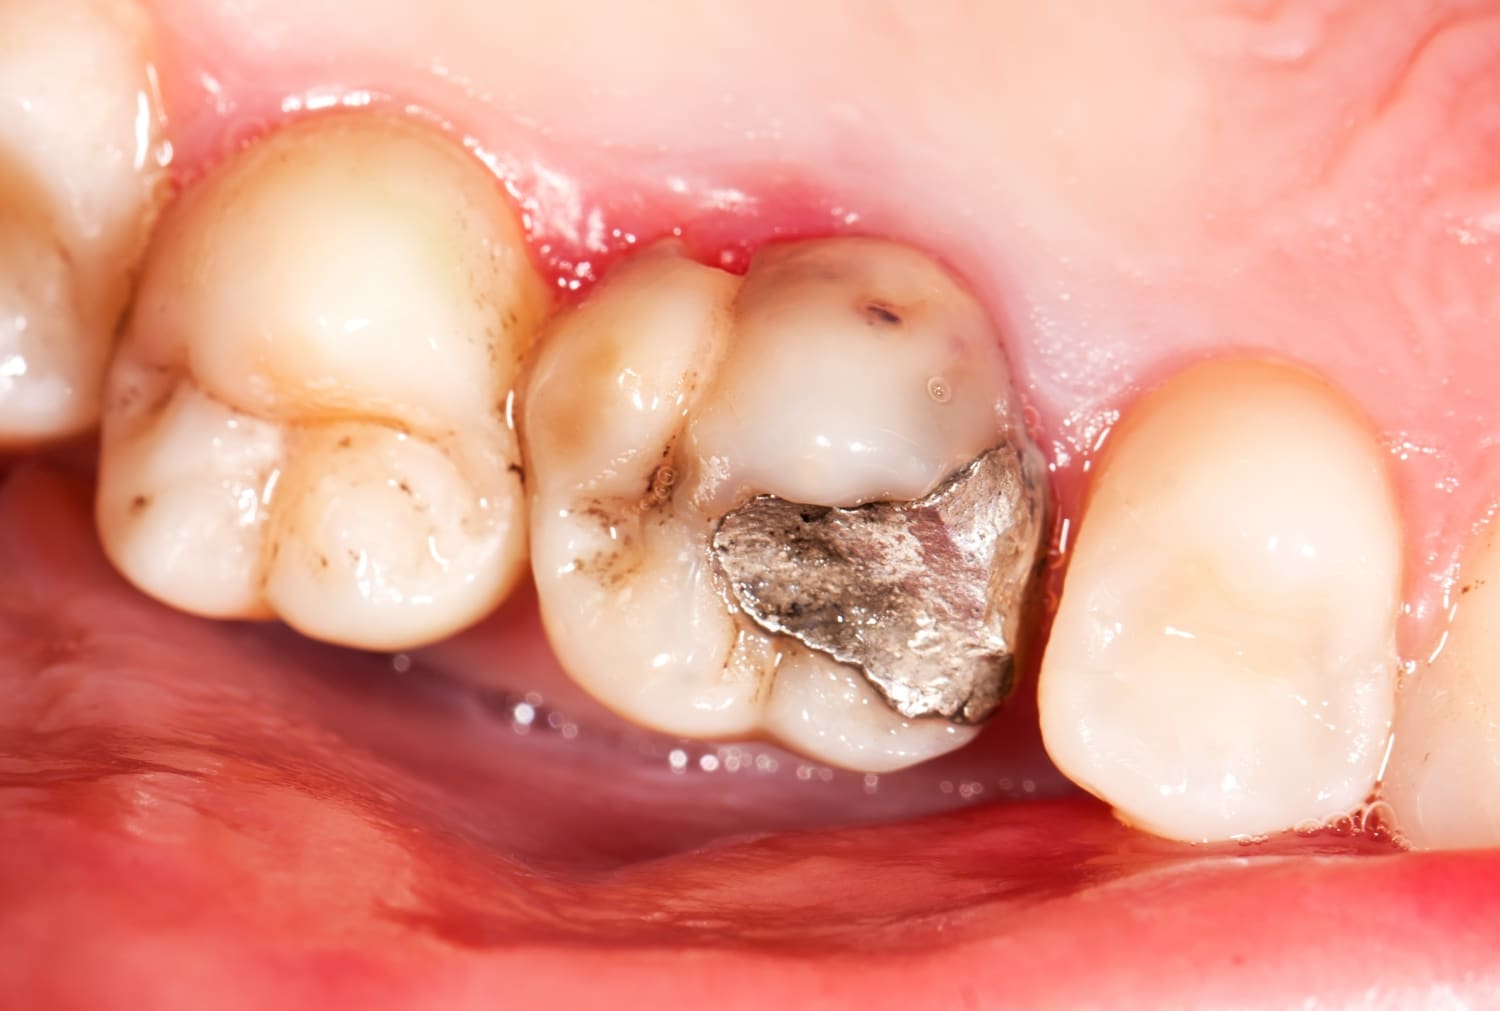 decay under a dental crown patient case study 6092d2dfa558f